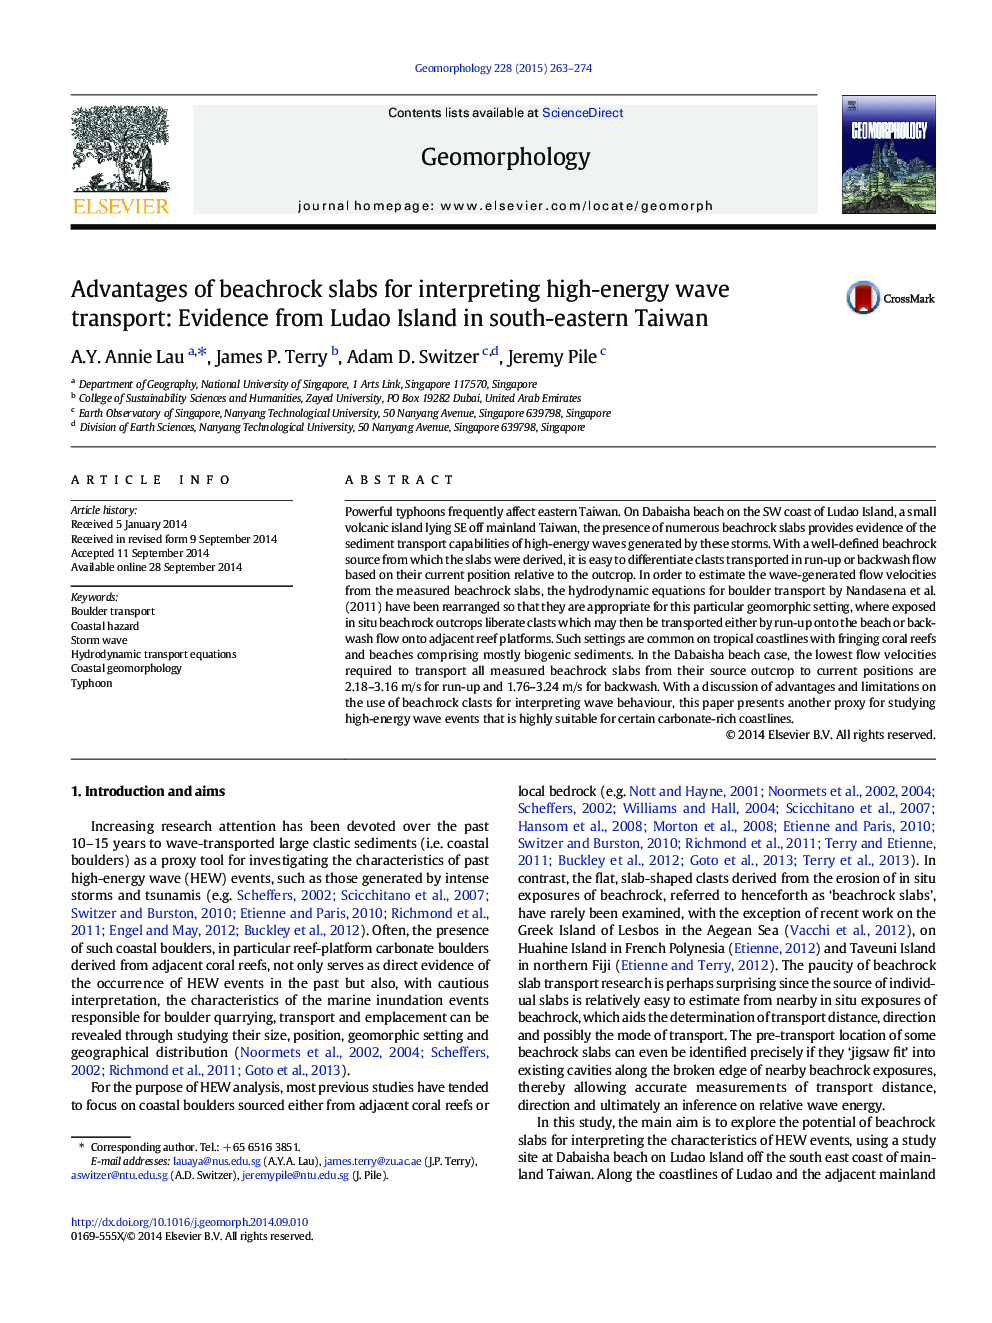 مزایای اسلبهای ساحلی برای تفسیر انتقال موج انرژی بالا: شواهد از جزیره لادائو در جنوب شرقی تایوان 